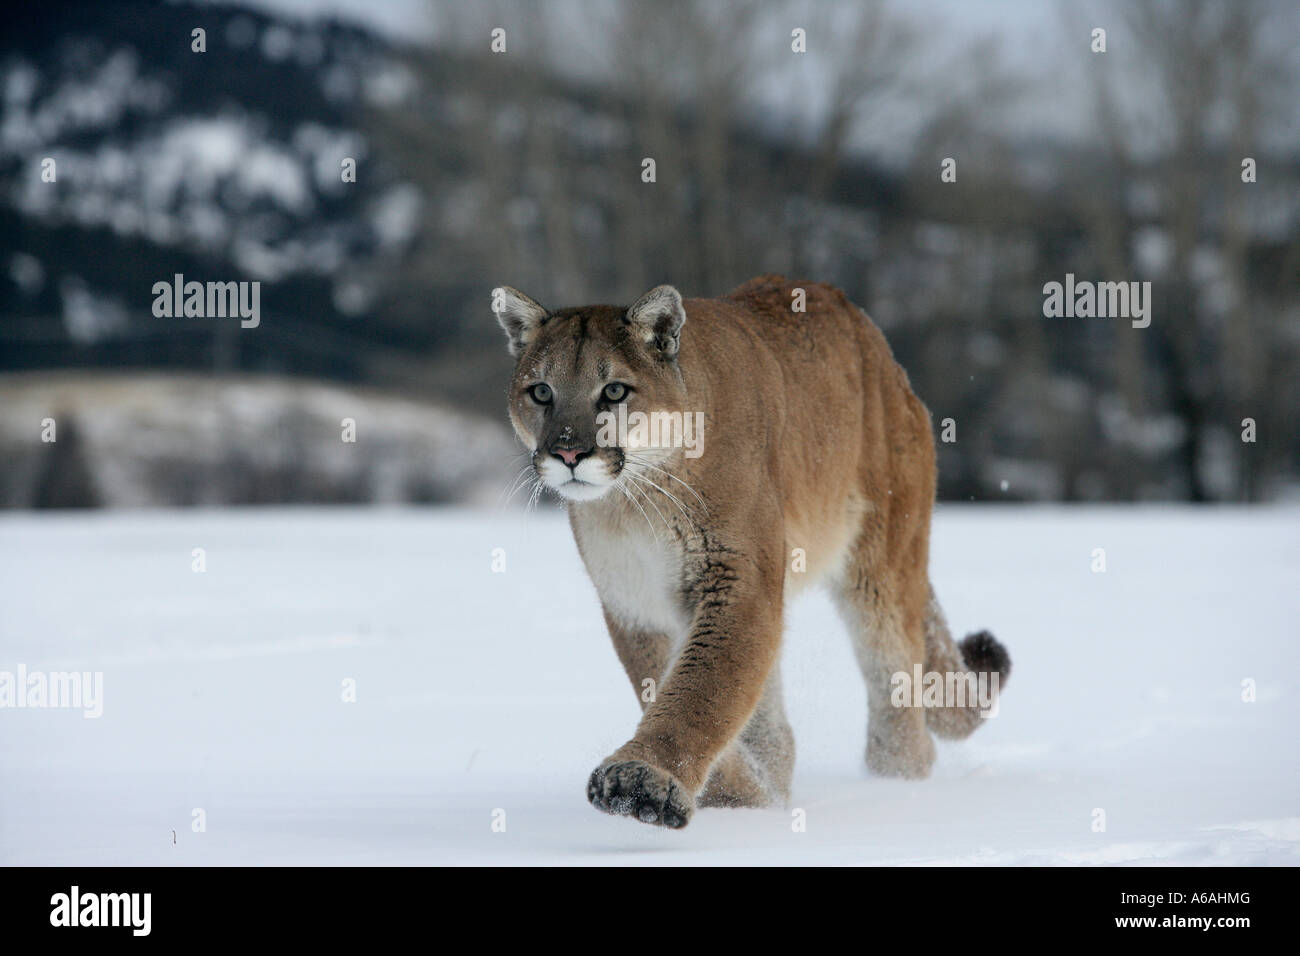 Puma or Mountain lion Puma concolor Stock Photo